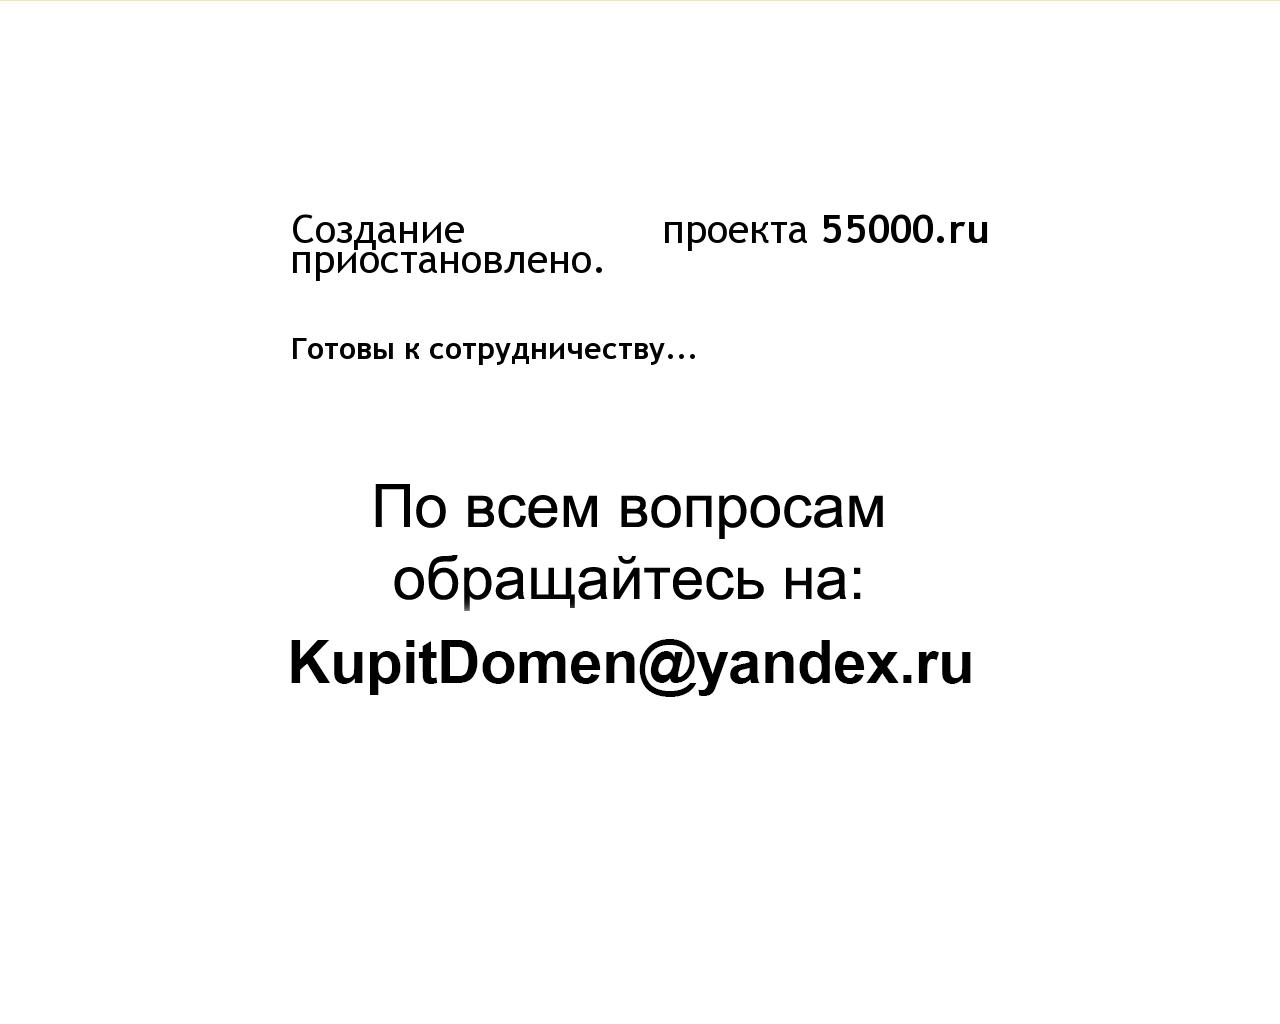 Изображение сайта 55000.ru в разрешении 1280x1024